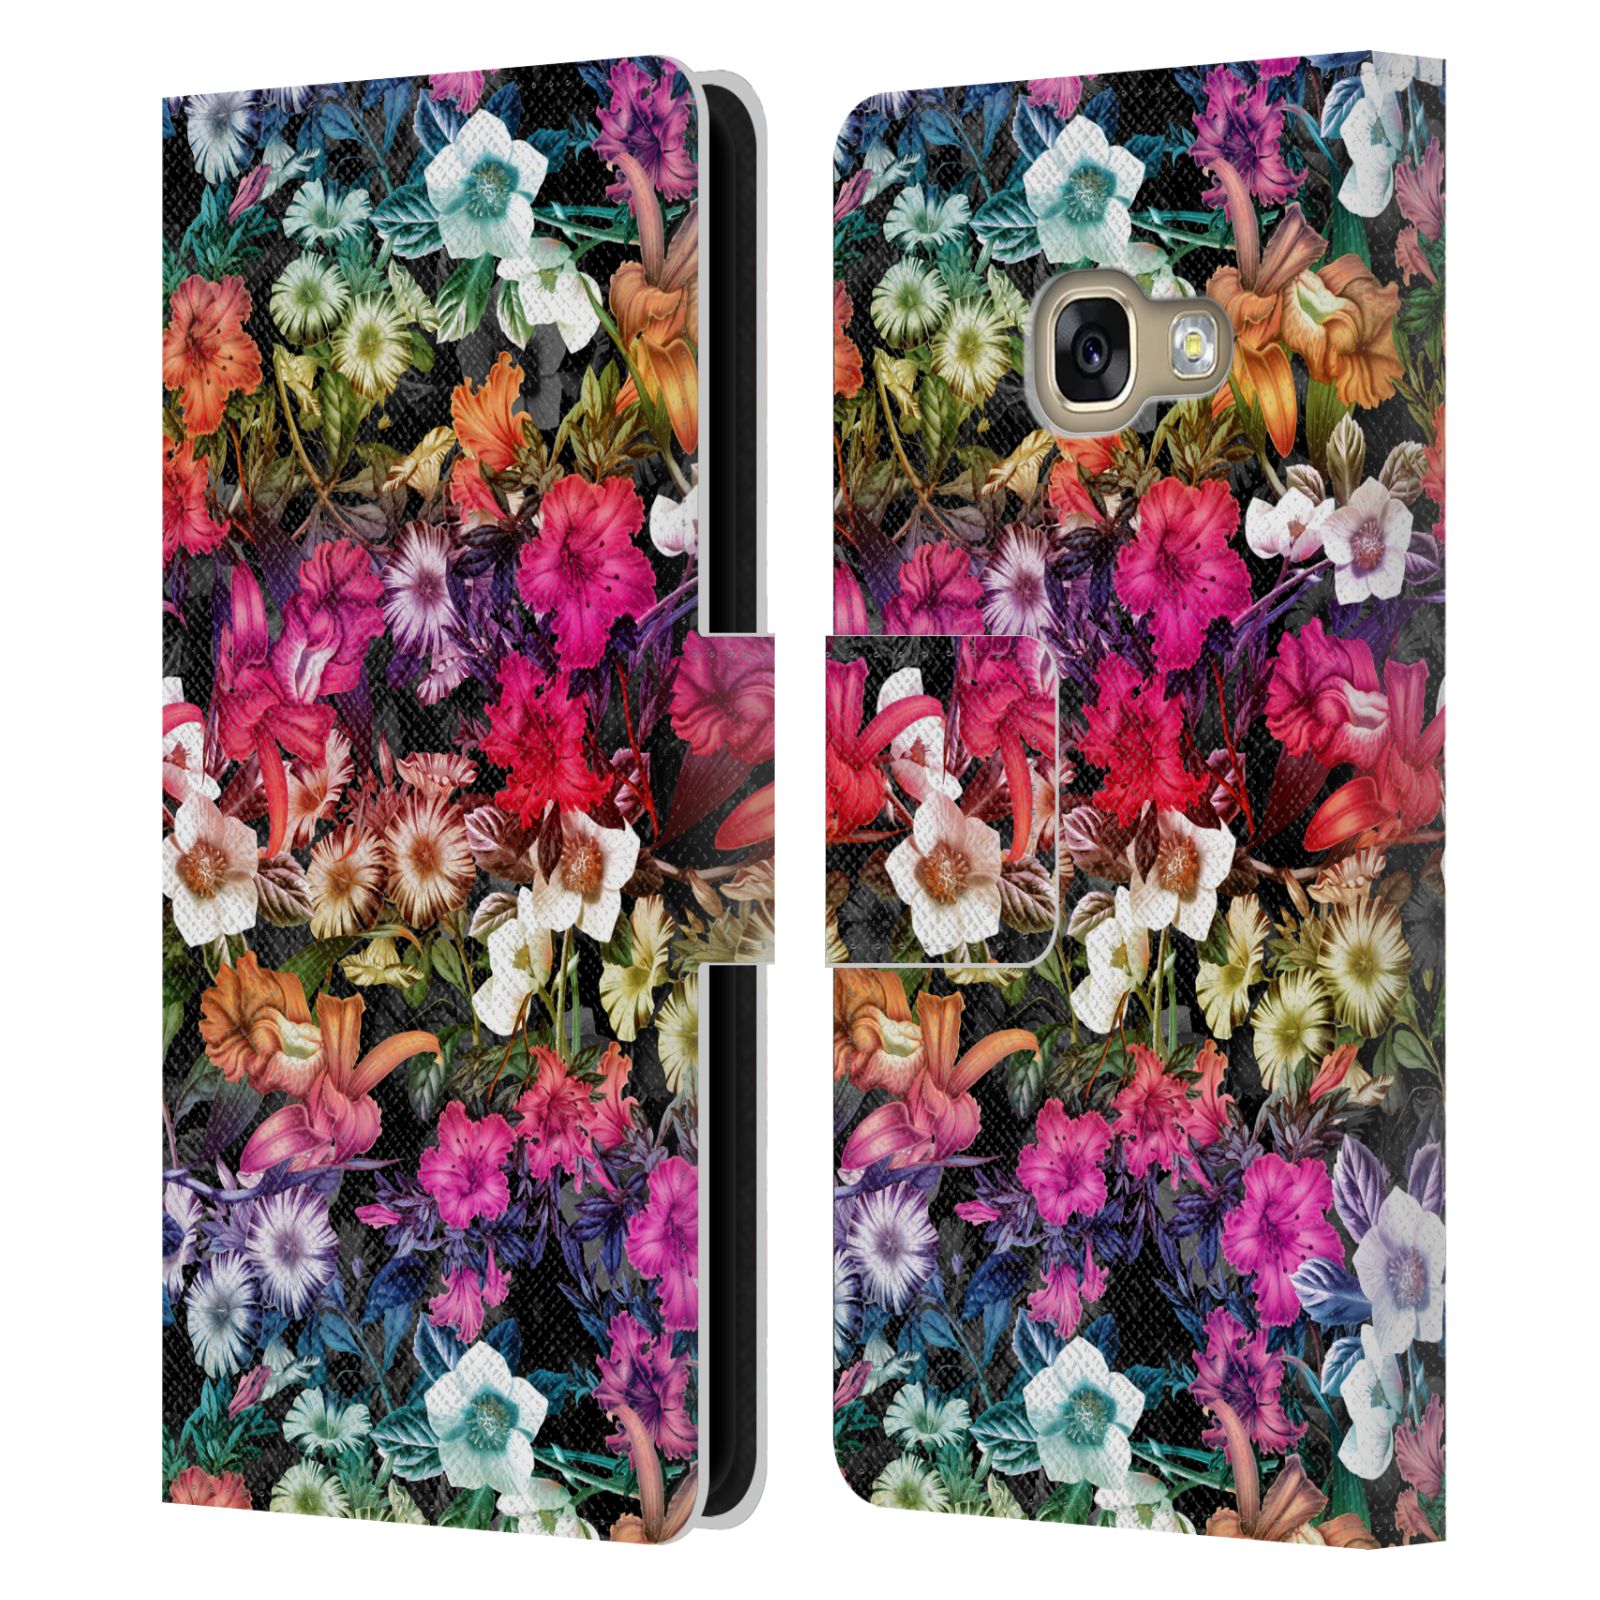 Pouzdro HEAD CASE pro mobil Samsung Galaxy A3 2017 - Burcu - Květiny multikolor